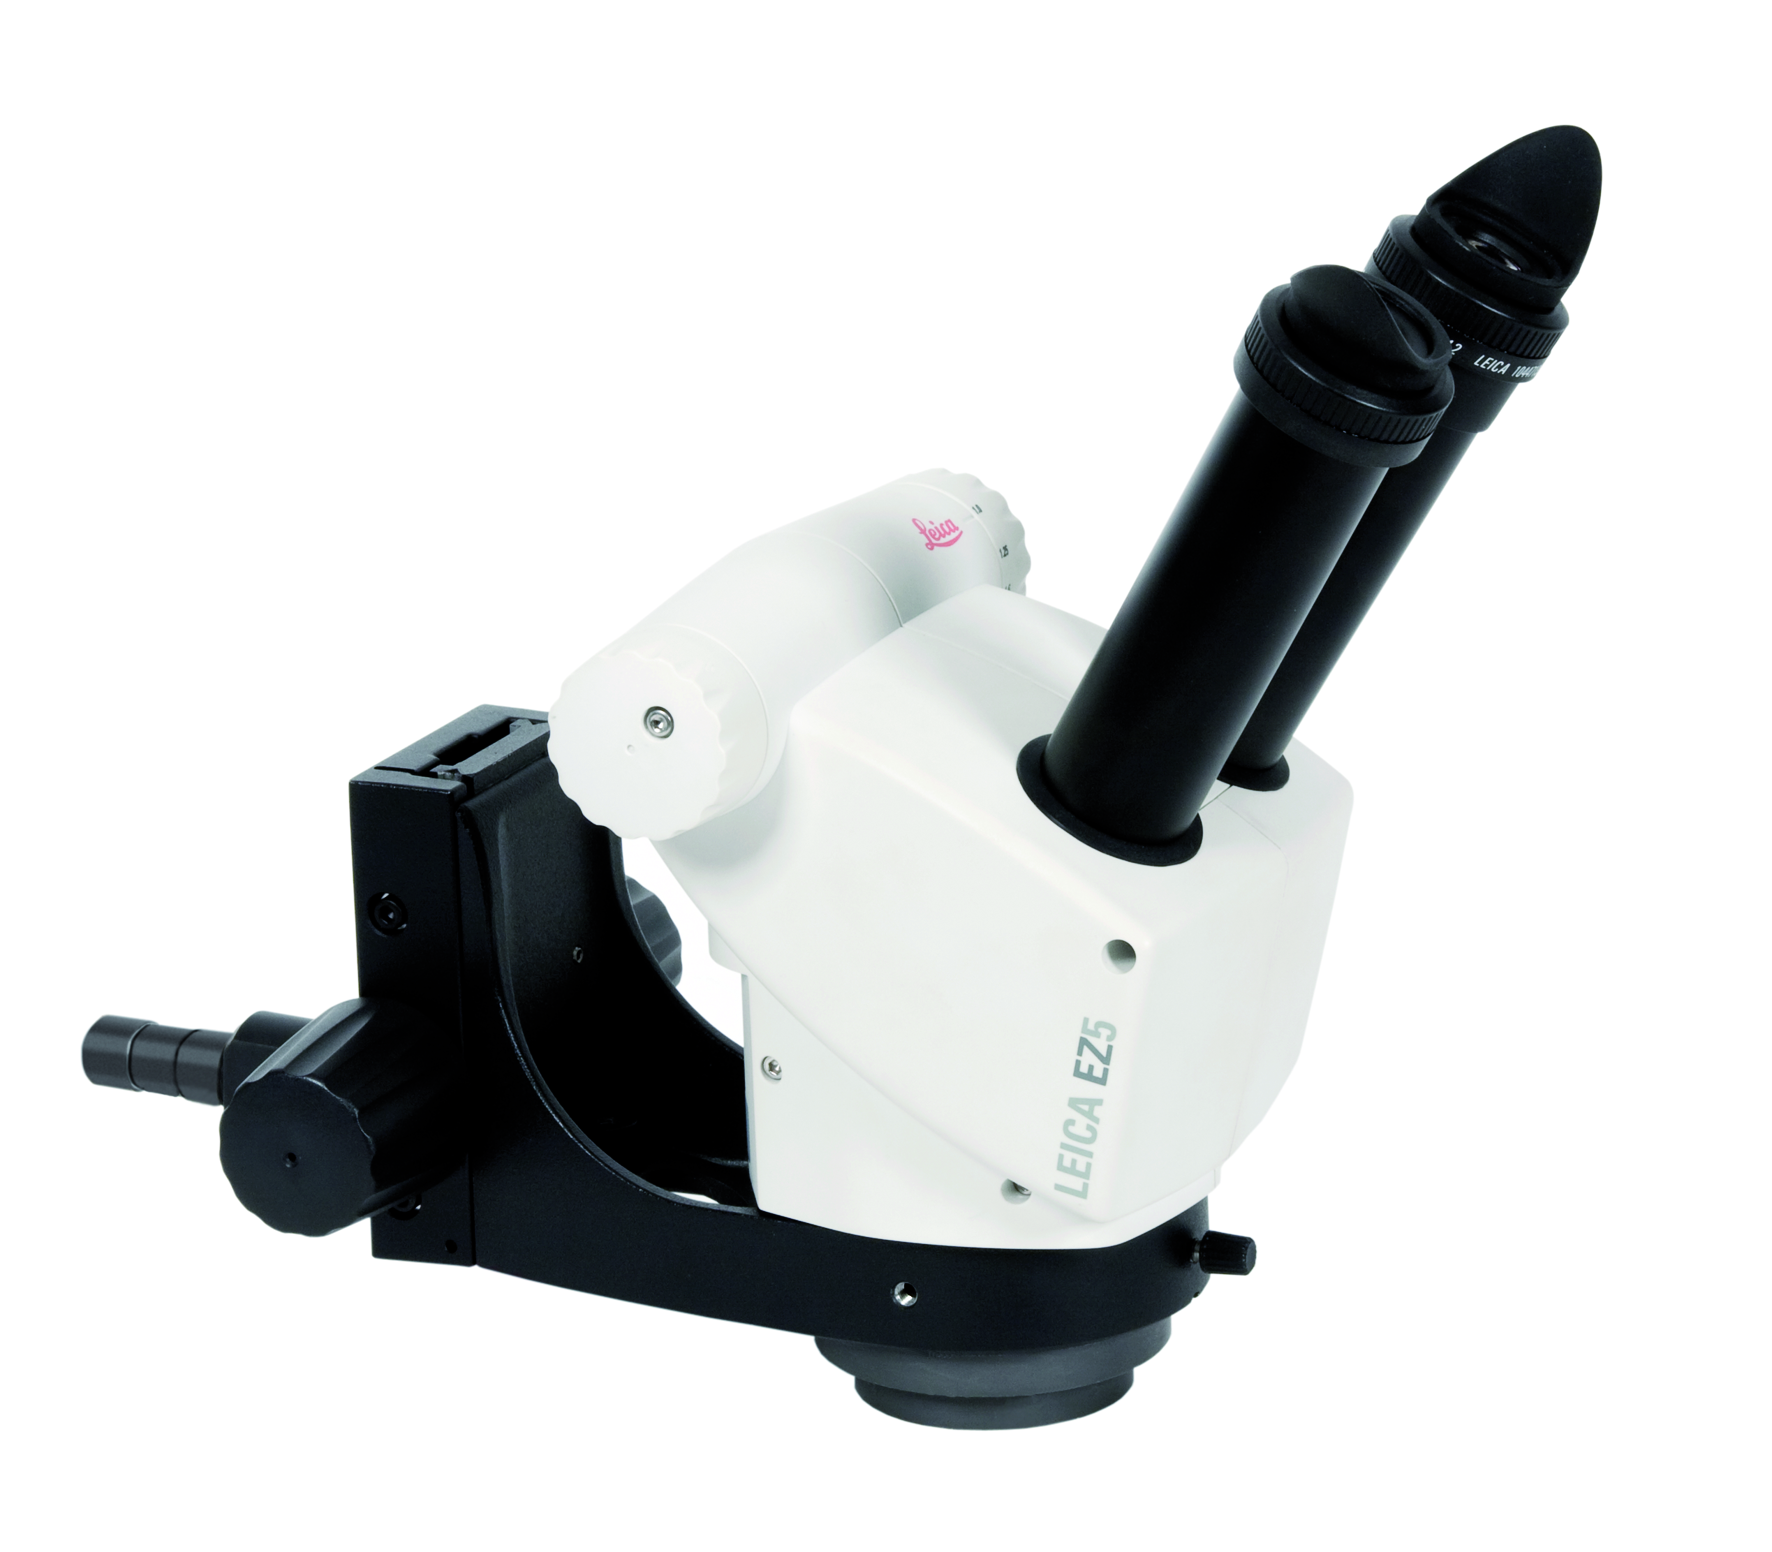 Leica EZ5 Stereomikroskop für optische Präzision